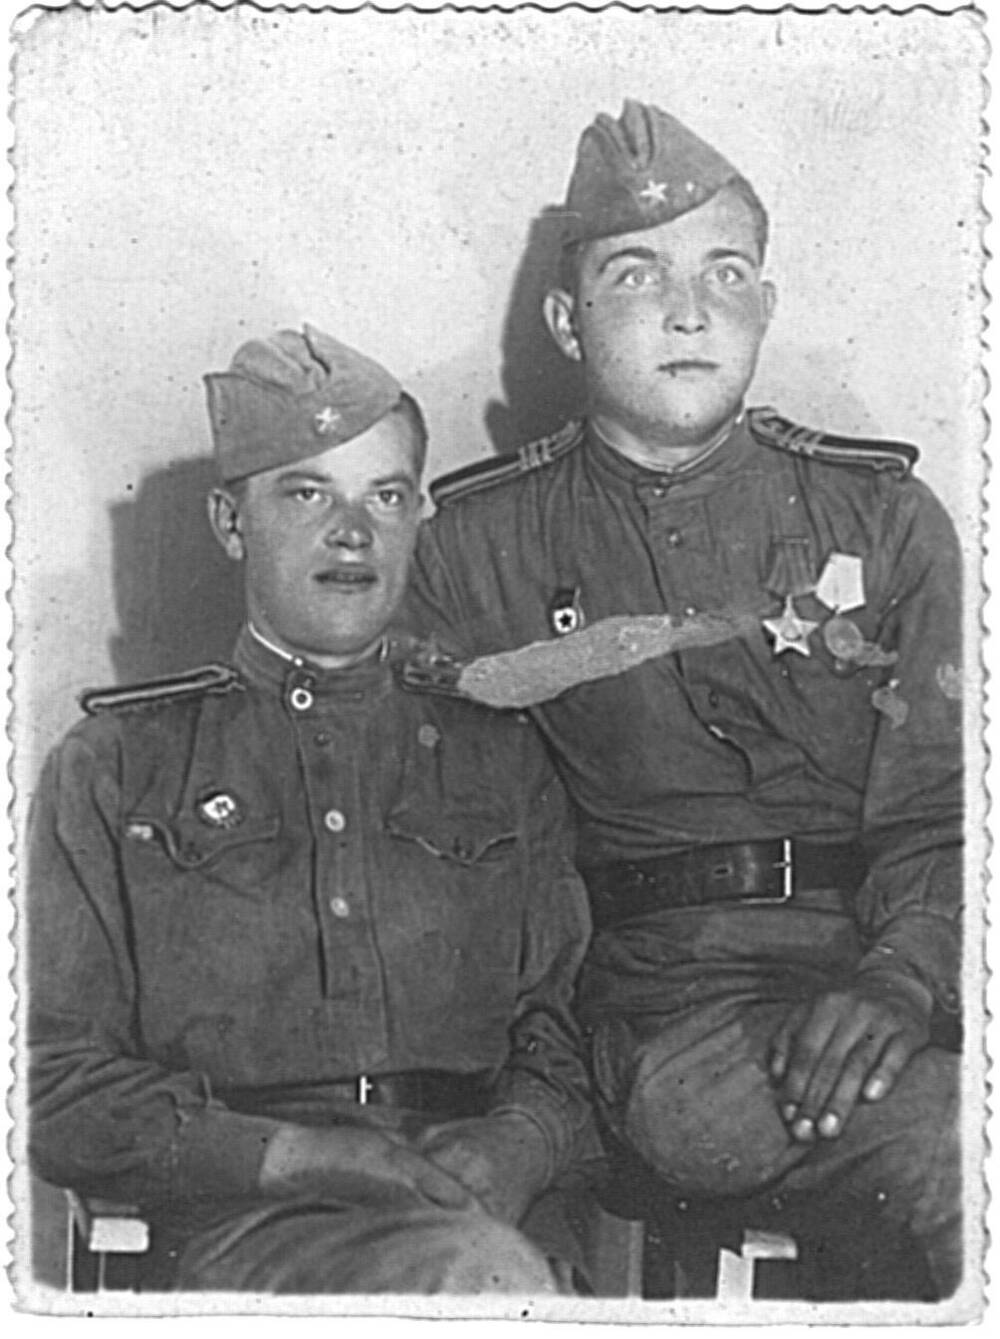 Фотография черно-белая Лашкова Василия Павловича (справа) с другом, участники Великой Отечественной войны 1941-1945 г. г.